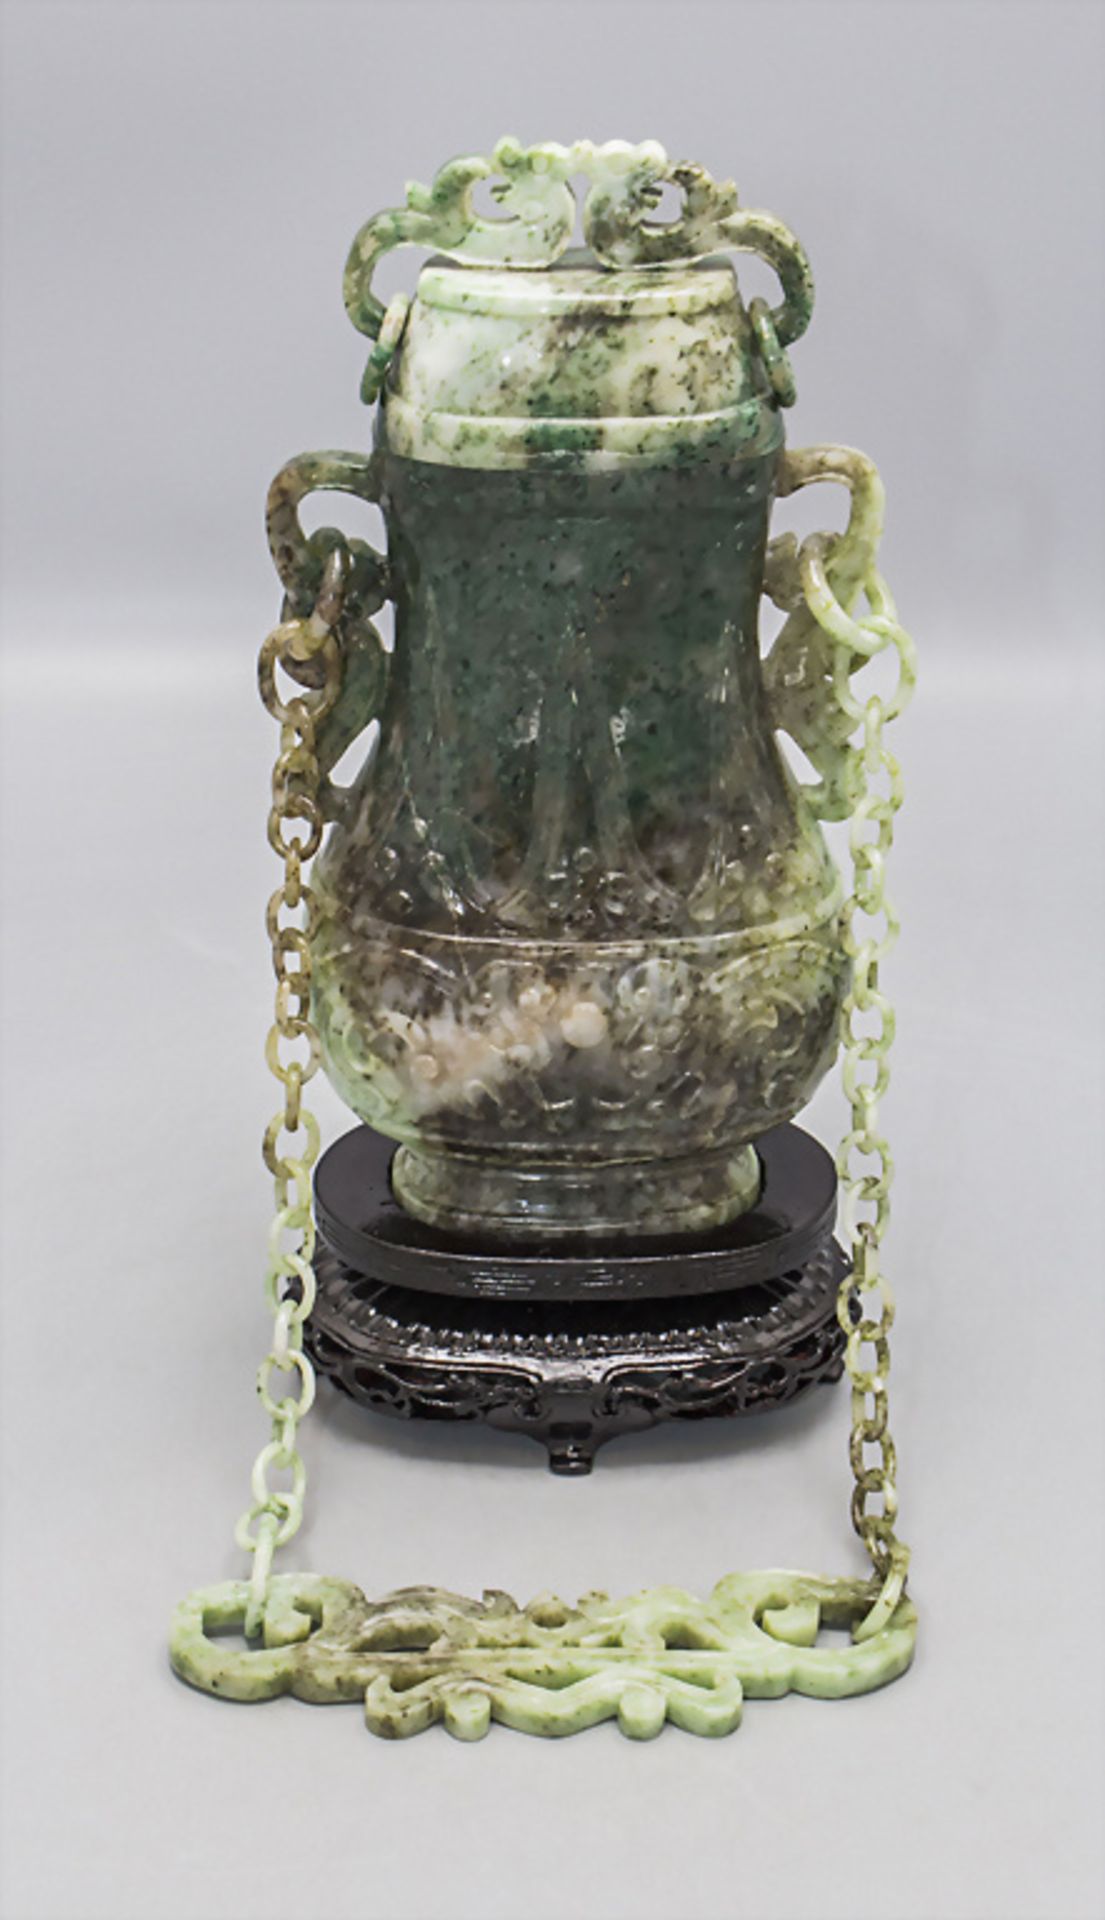 Feine Jade-Deckelvase an Hängekette / A fine jade lidded vase on a chain, China, um 1920 - Image 10 of 10